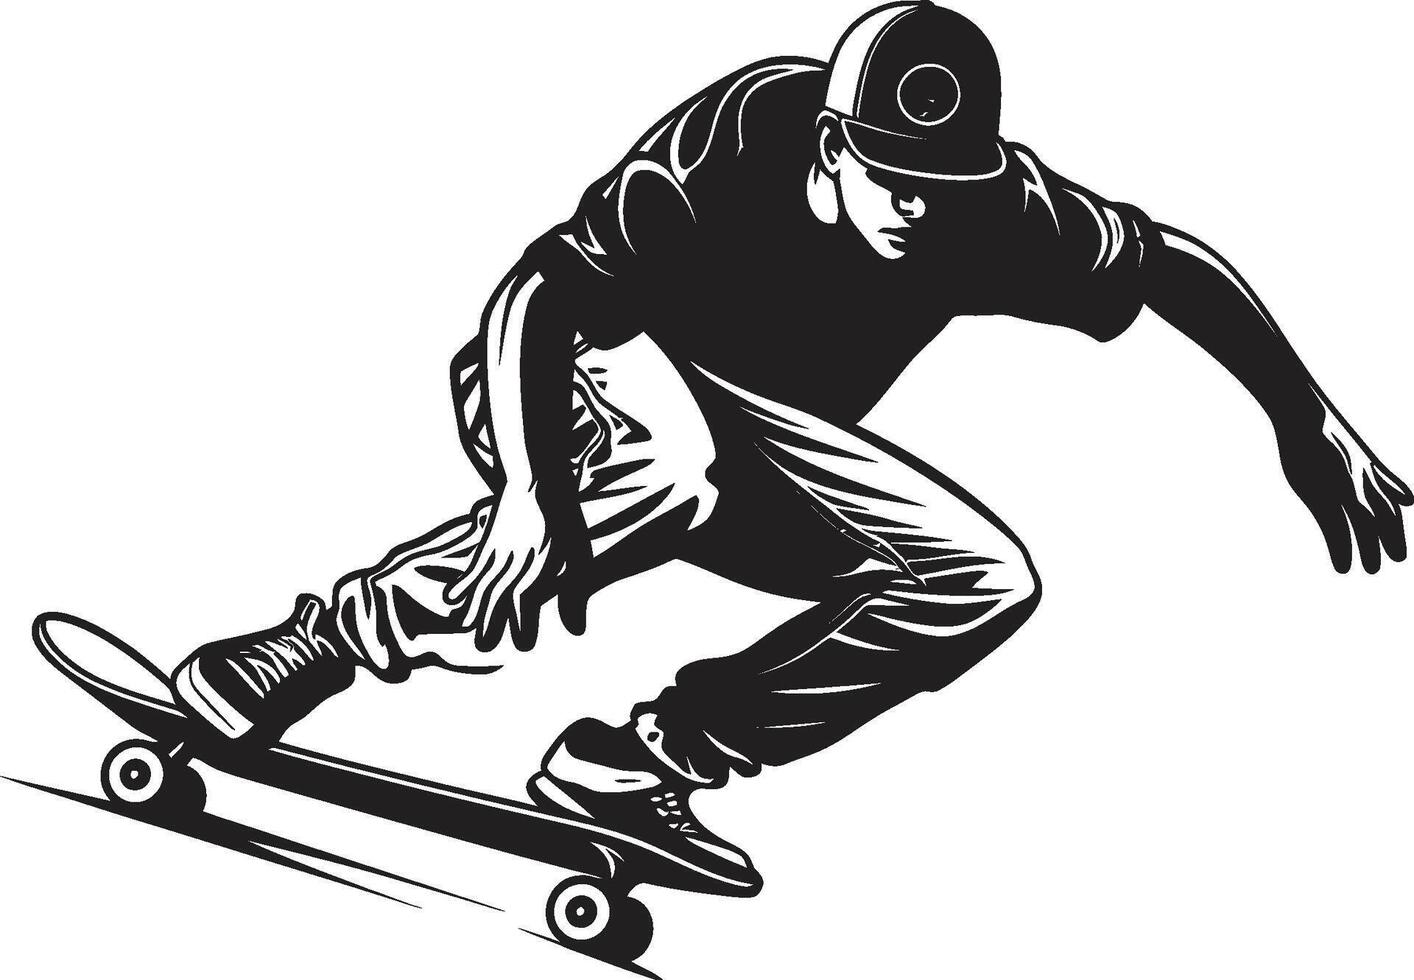 planche à roulette la souveraineté noir logo conception avec une équitation monarque Urbain rapidité dynamique vecteur icône de une homme sur une planche à roulette dans noir